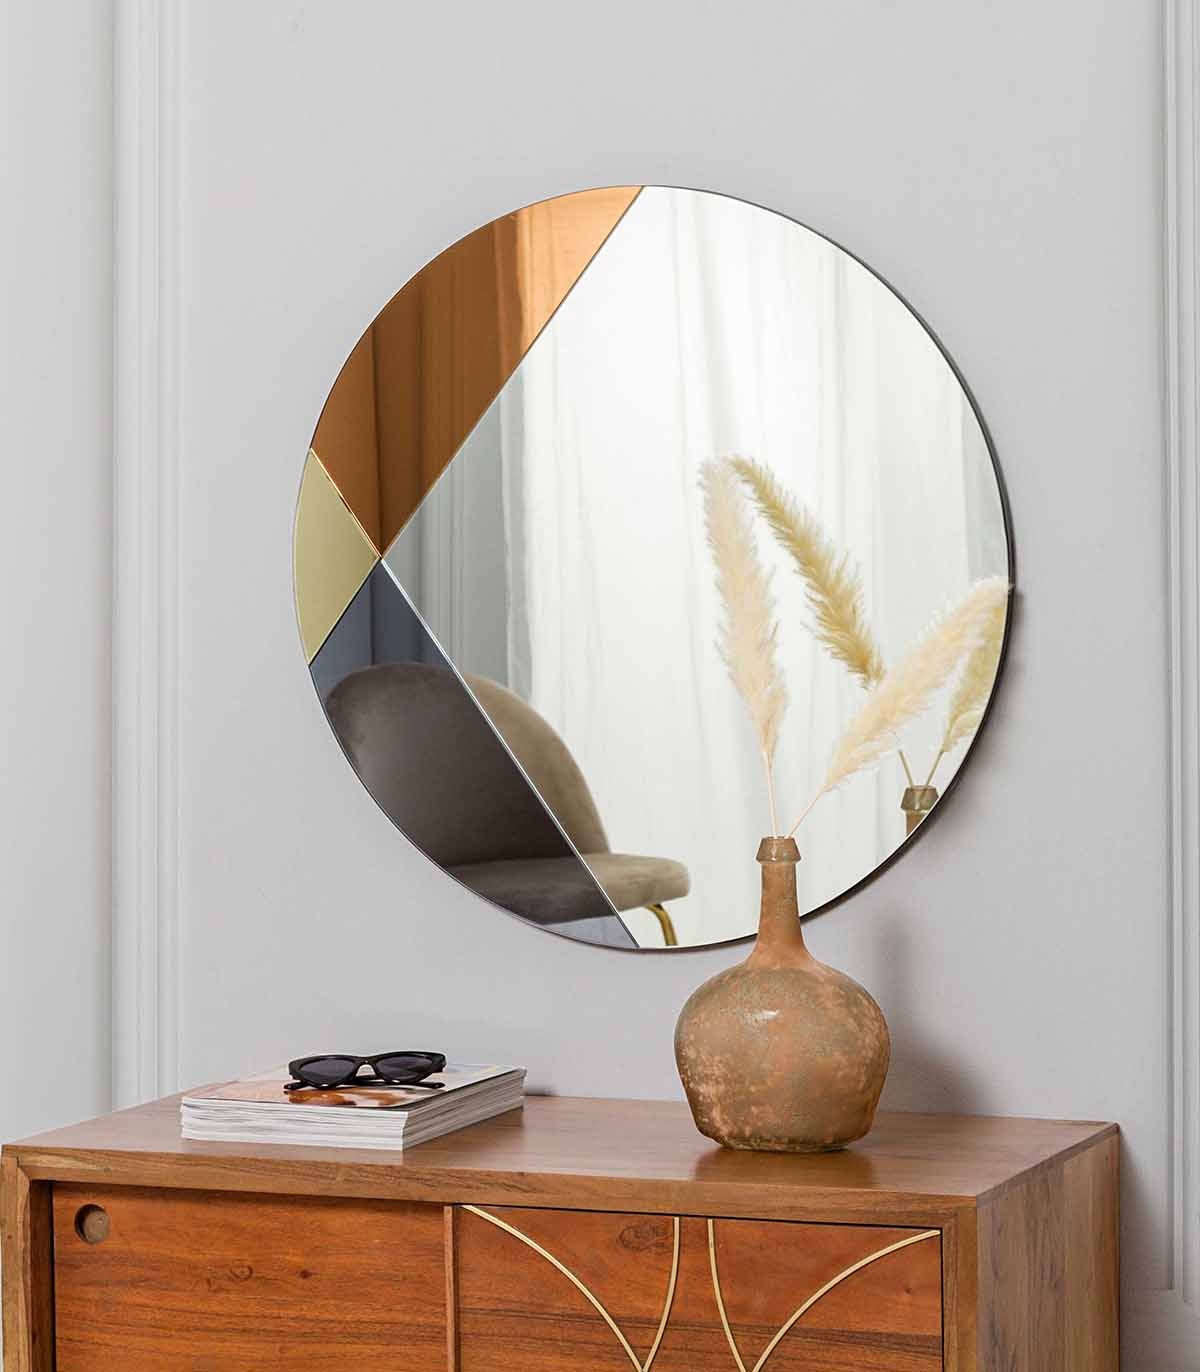 Comprar Espejo redondo de 40cm, espejo circular para pared, espejo